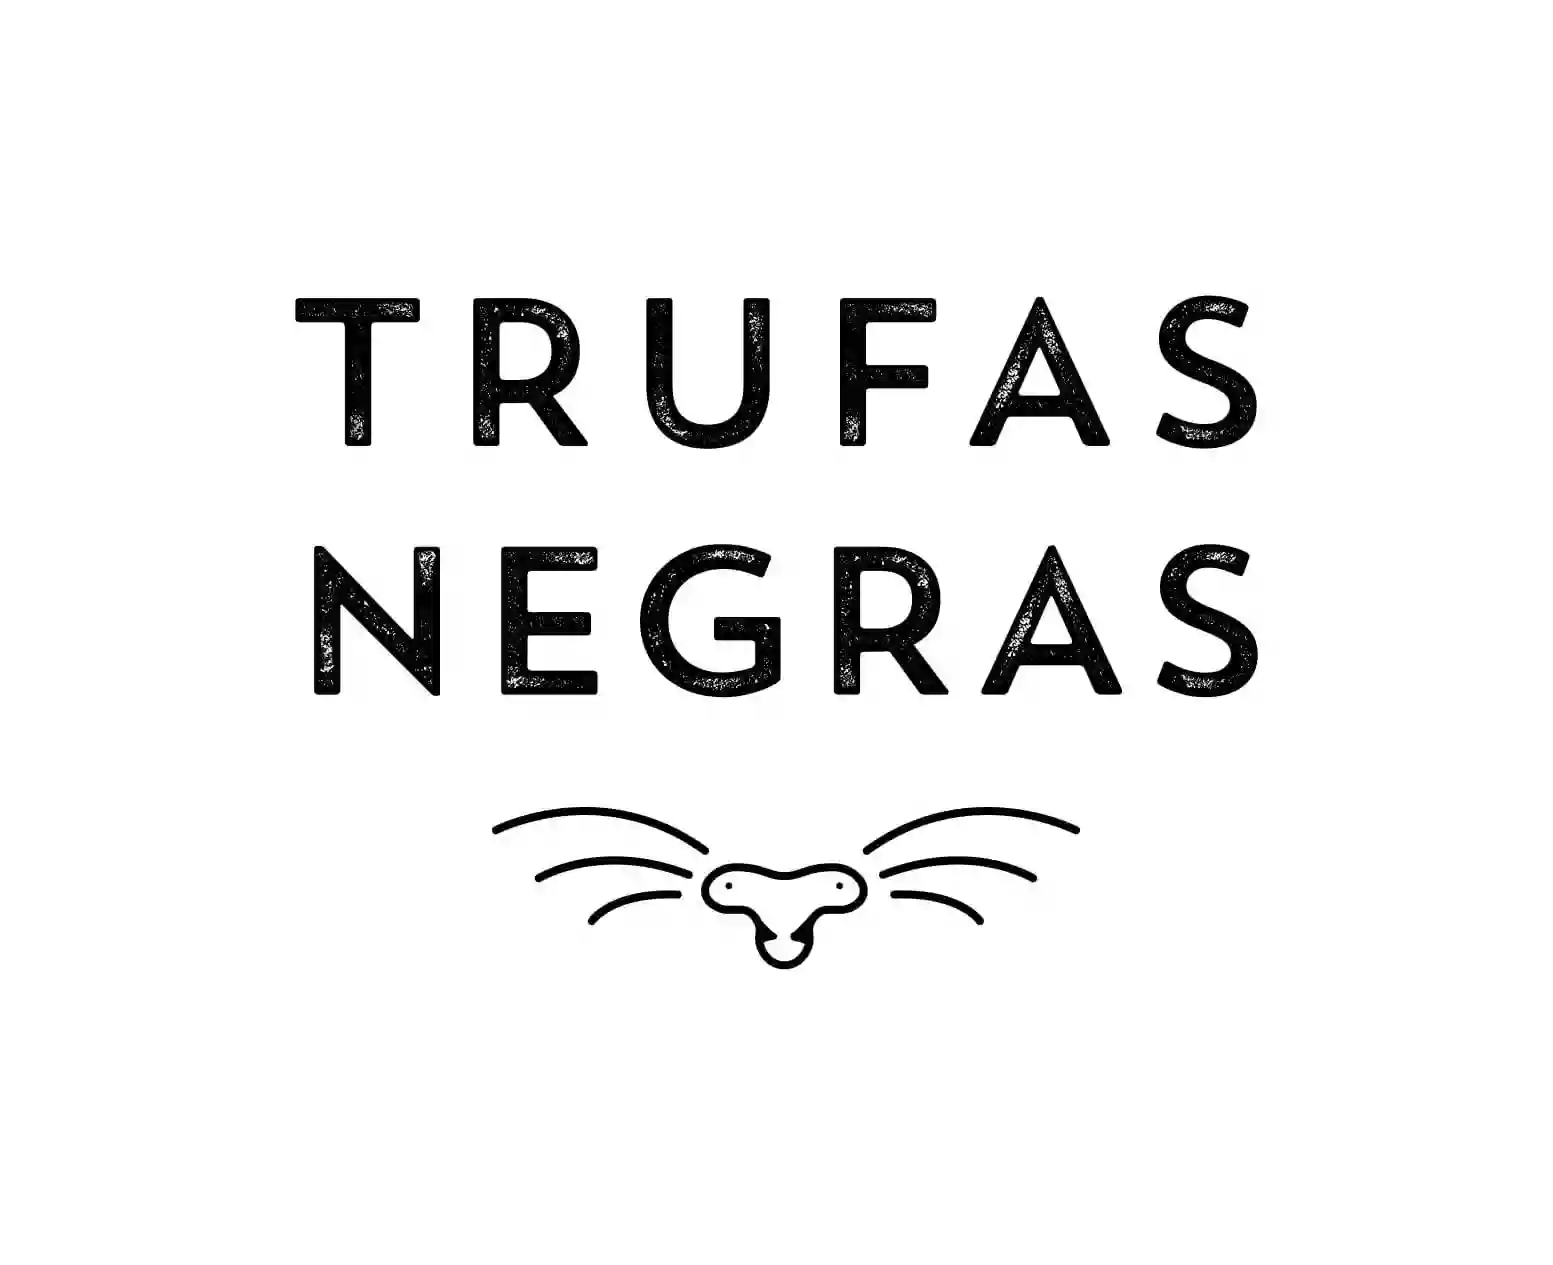 TRUFAS NEGRAS - Centro de bienestar animal